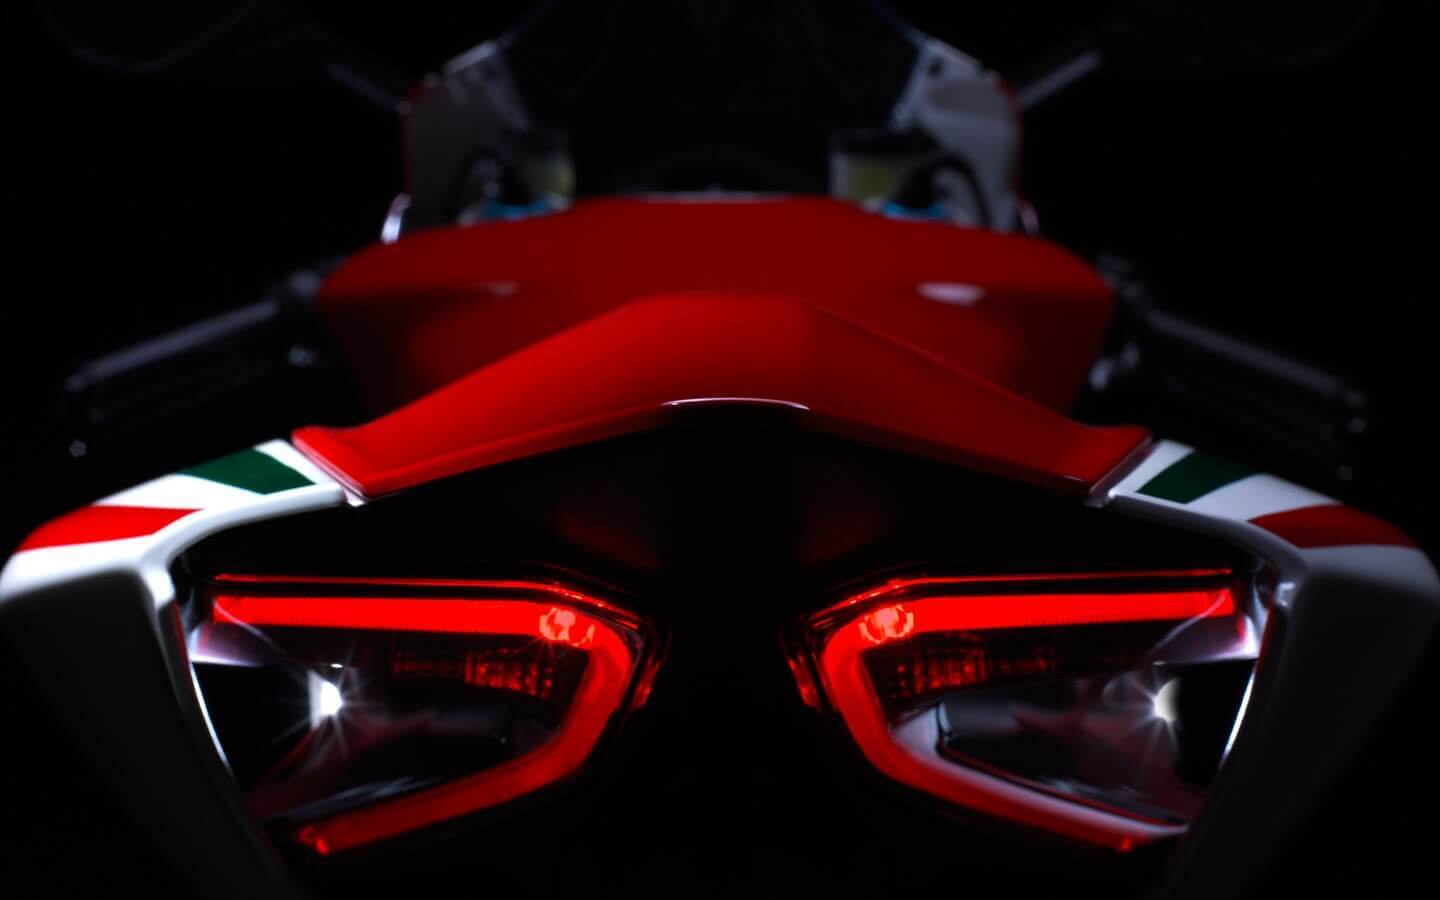 Honda CBR 250RR 2017